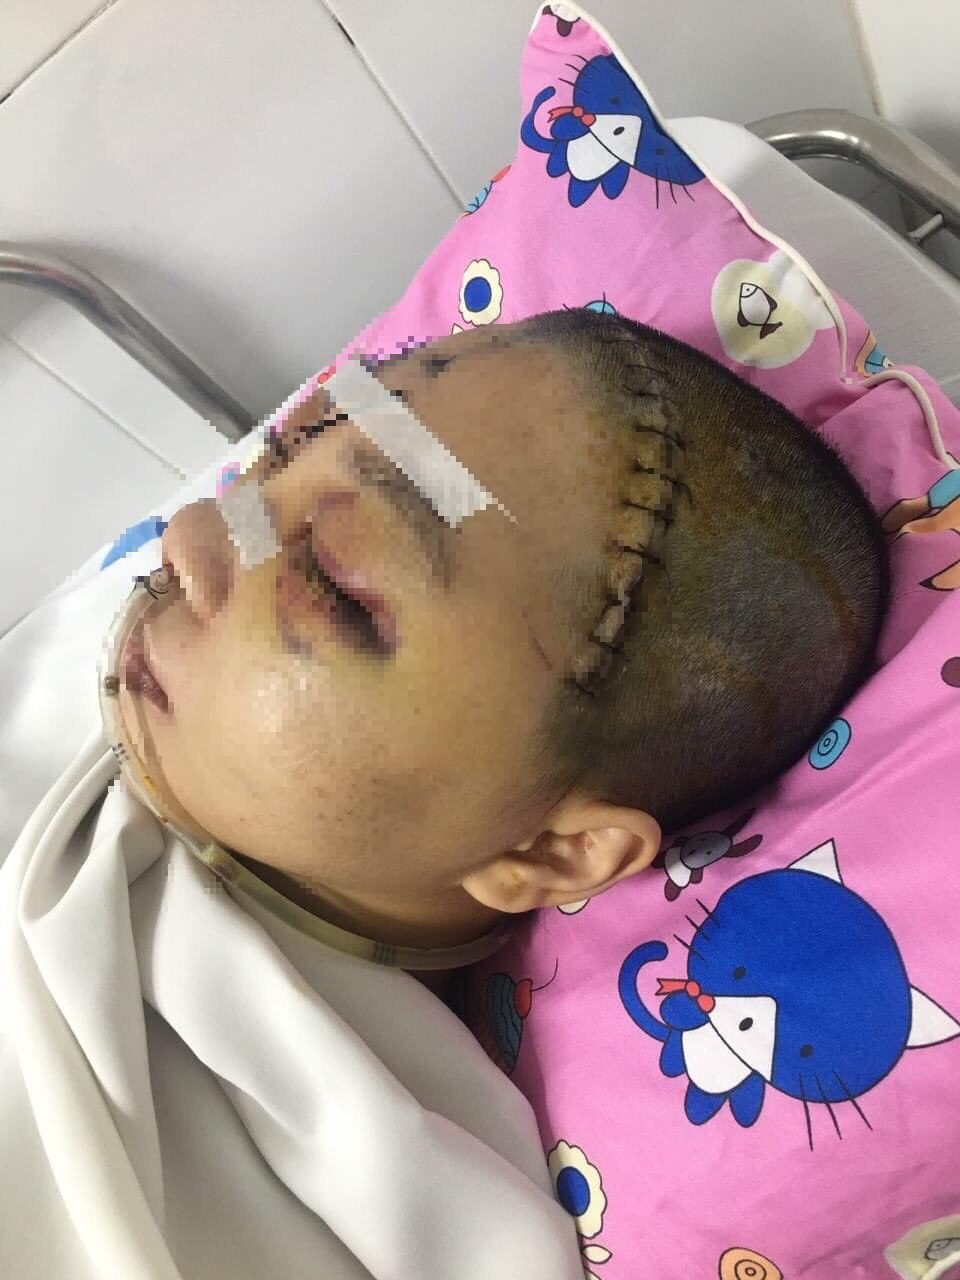 MS 808: Ám ảnh cánh tay cầu cứu của người mẹ vừa tai nạn xong, con gái học trường Y giờ hôn mê sâu vì chấn thương sọ não nặng - Ảnh 3.